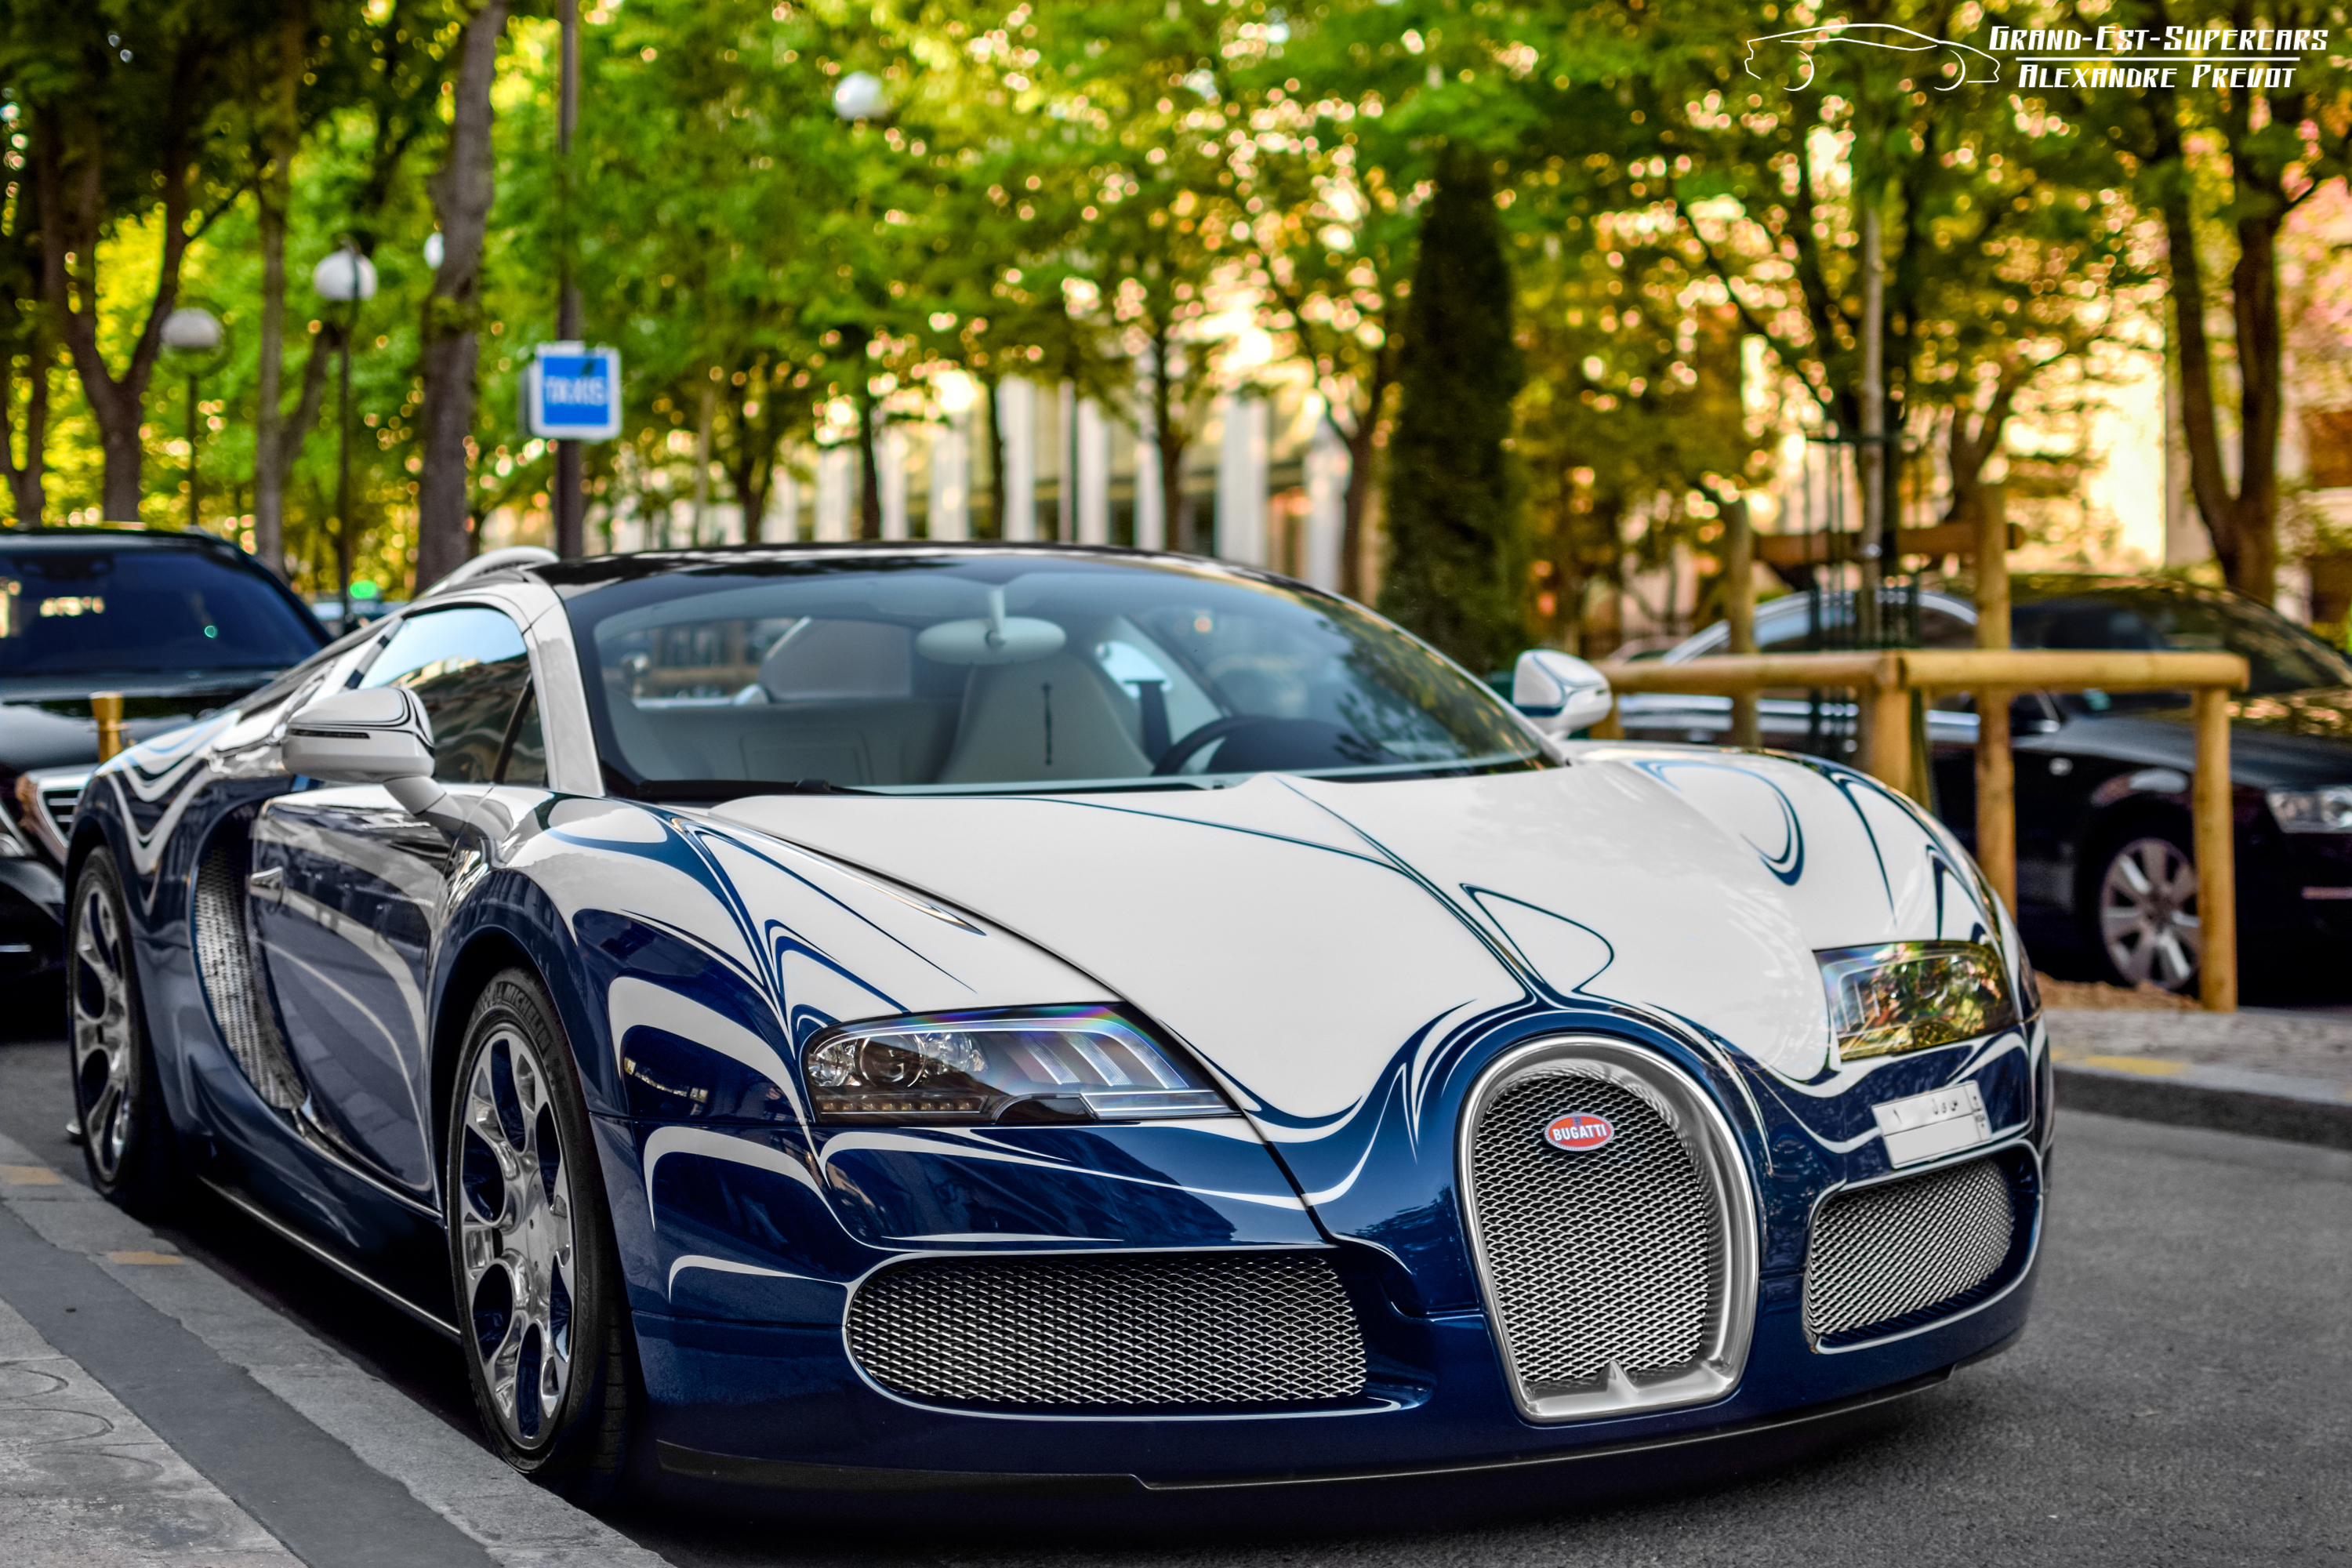 Скачать обои Bugatti Veyron на телефон бесплатно